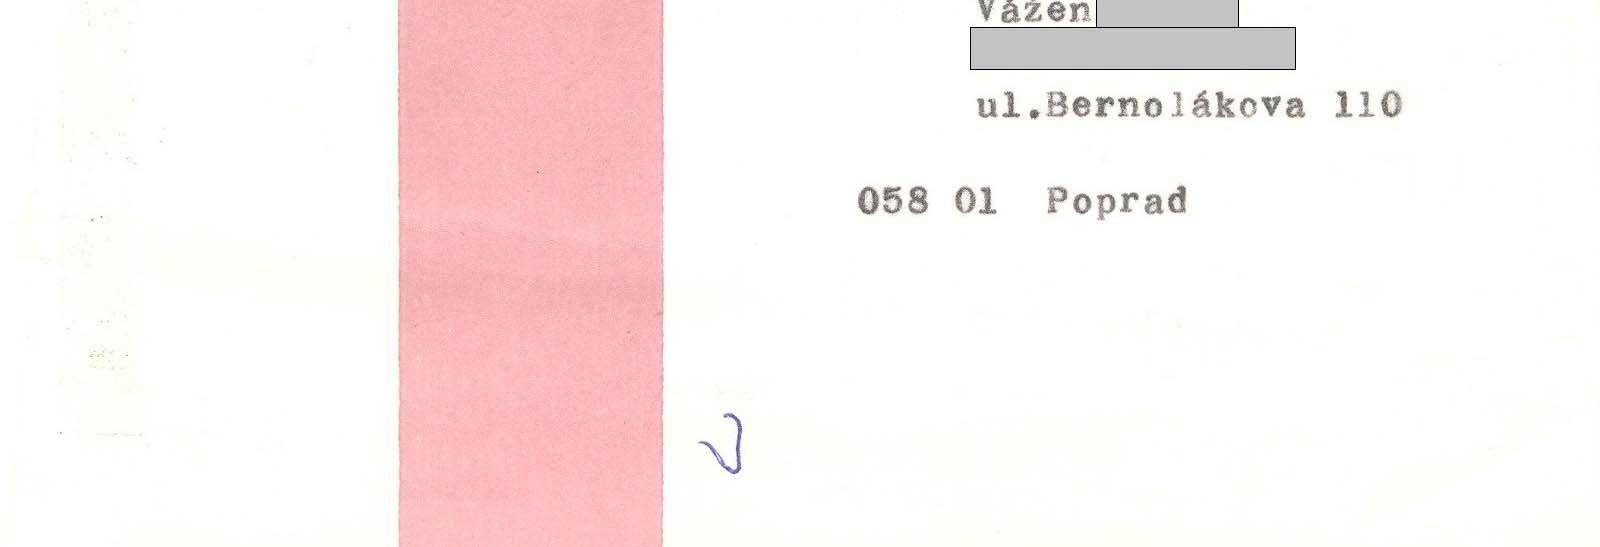 Dátum: 28. február 1995 Odosielateľ: Nemocnica s poliklinikou, POPRAD Pečiatka V.